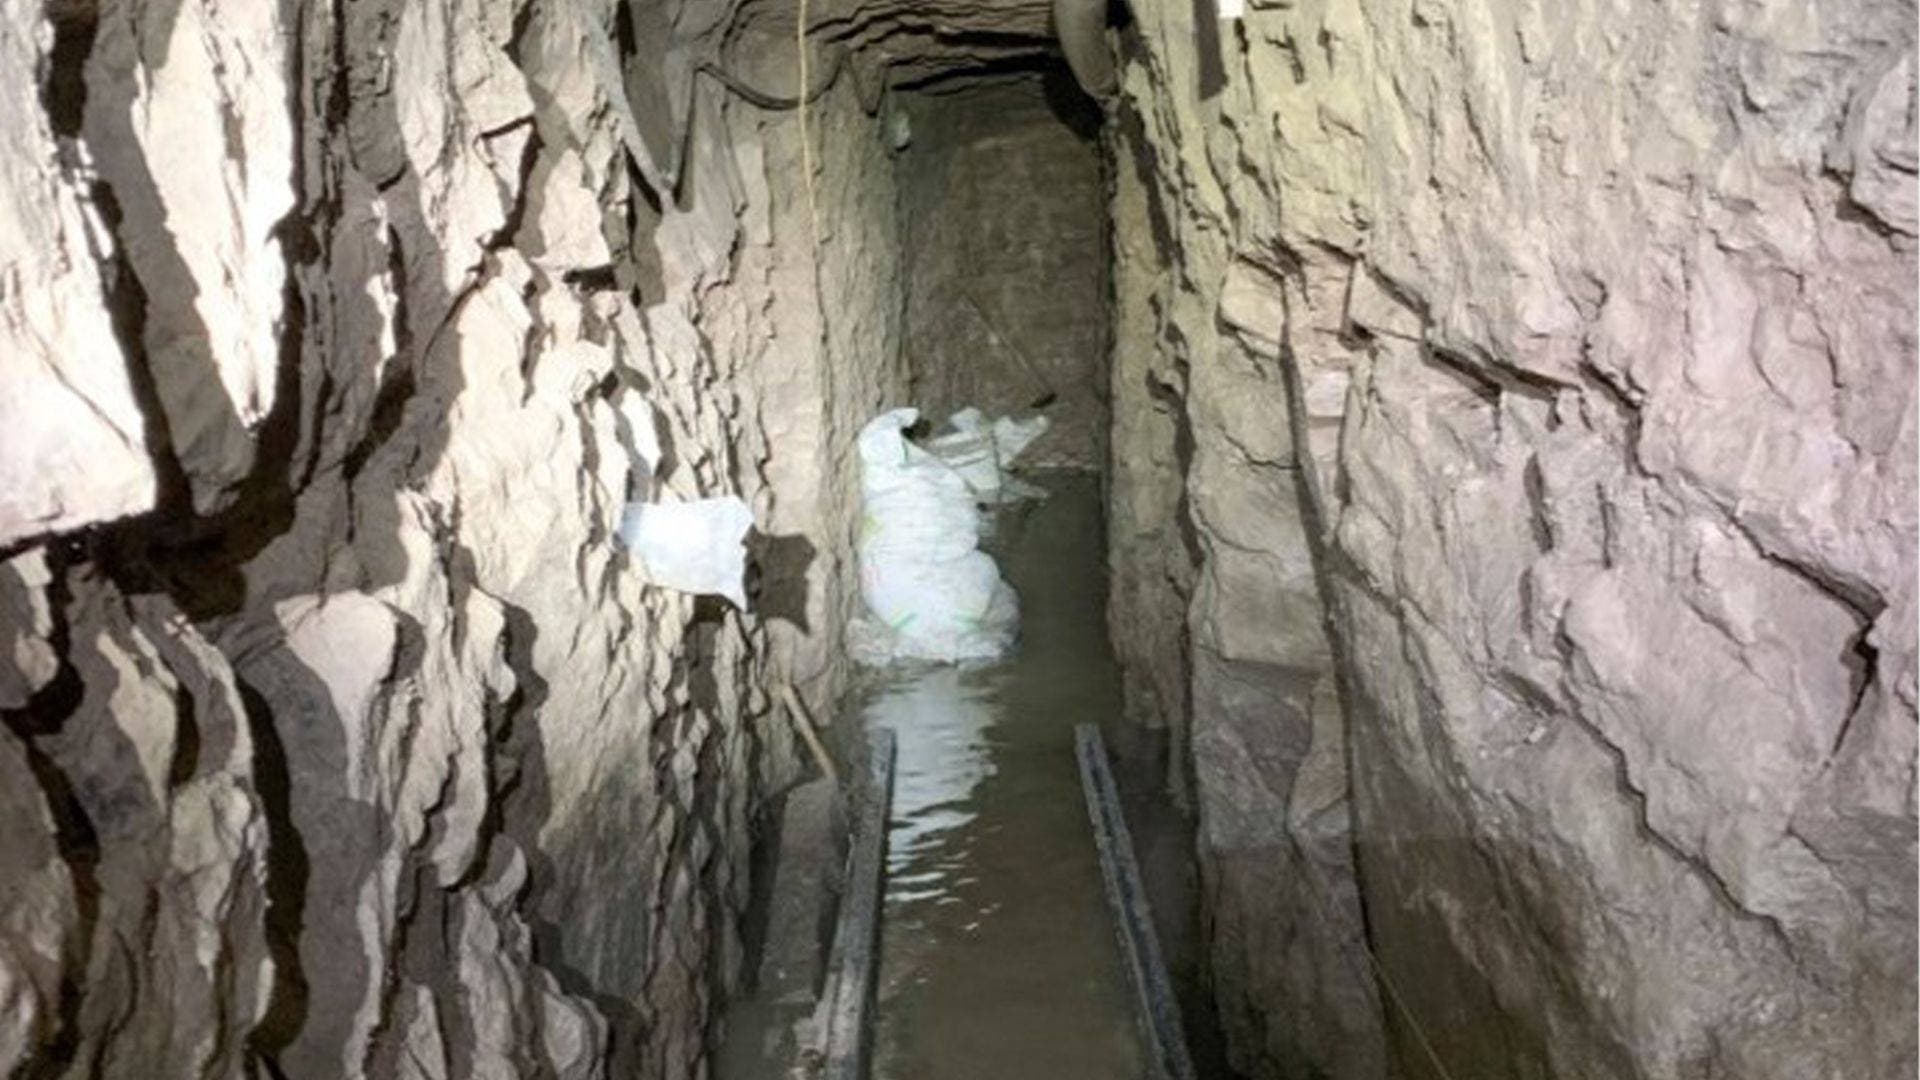 Conozca aquí el narco túnel más largo encontrado hasta ahora entre Tijuana y San Diego